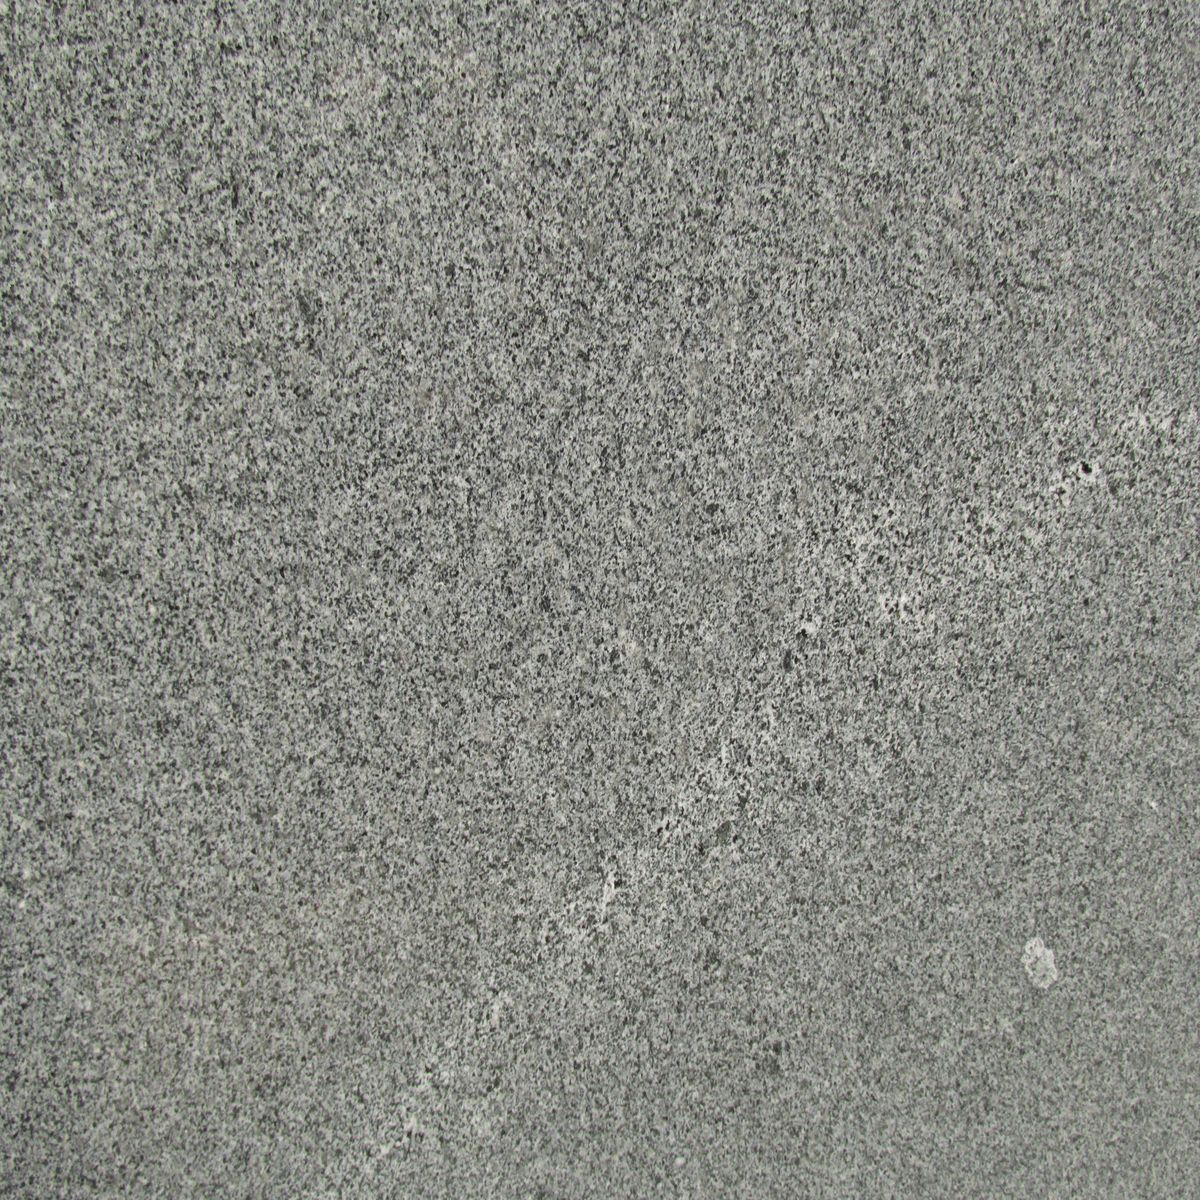 diorite granites